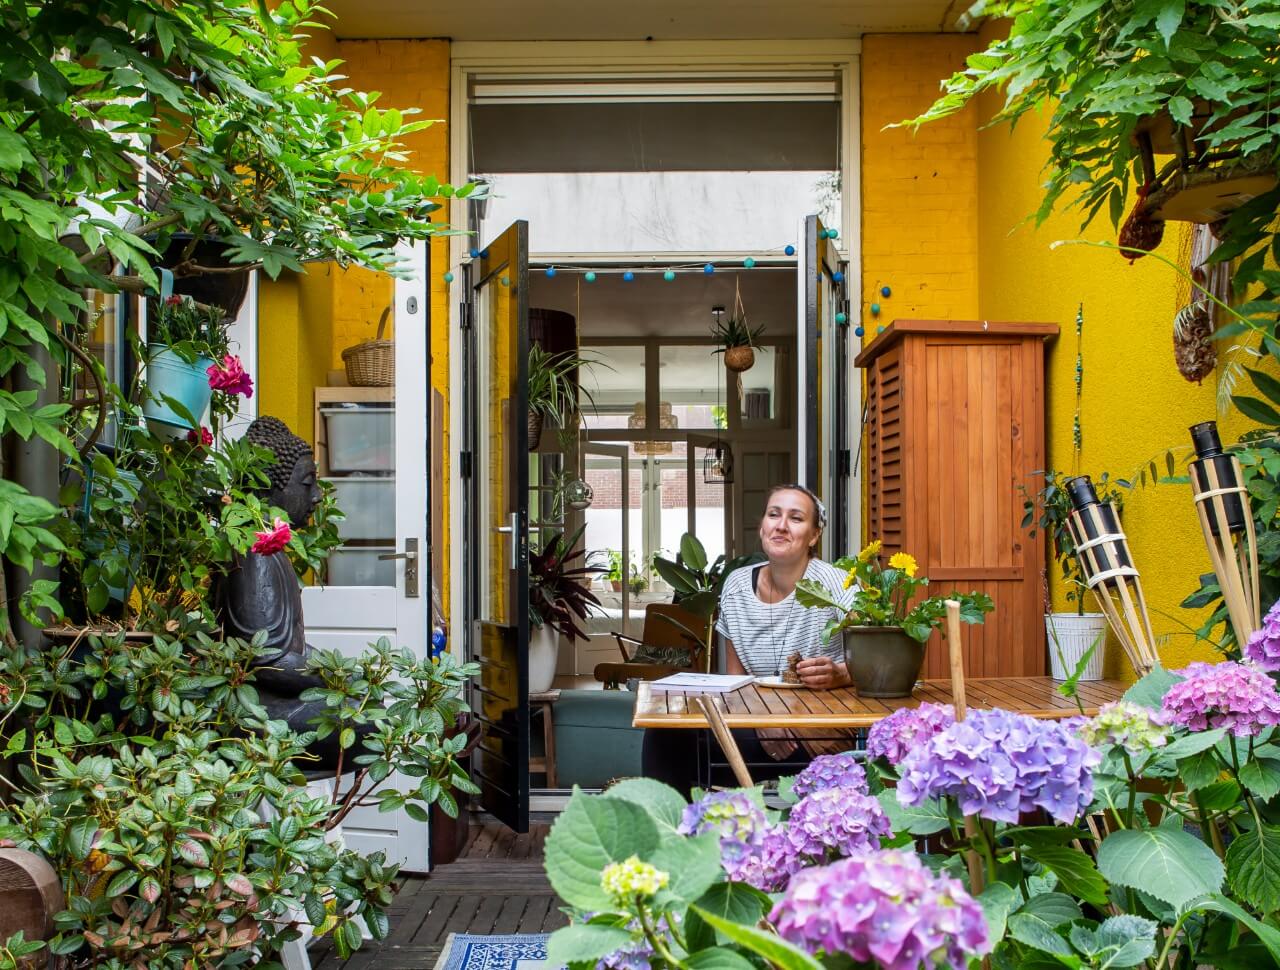 De kleine stadswoning van Kim in Utrecht is een groen paradijs met allerlei vondsten – Creatief met Buitenleven 